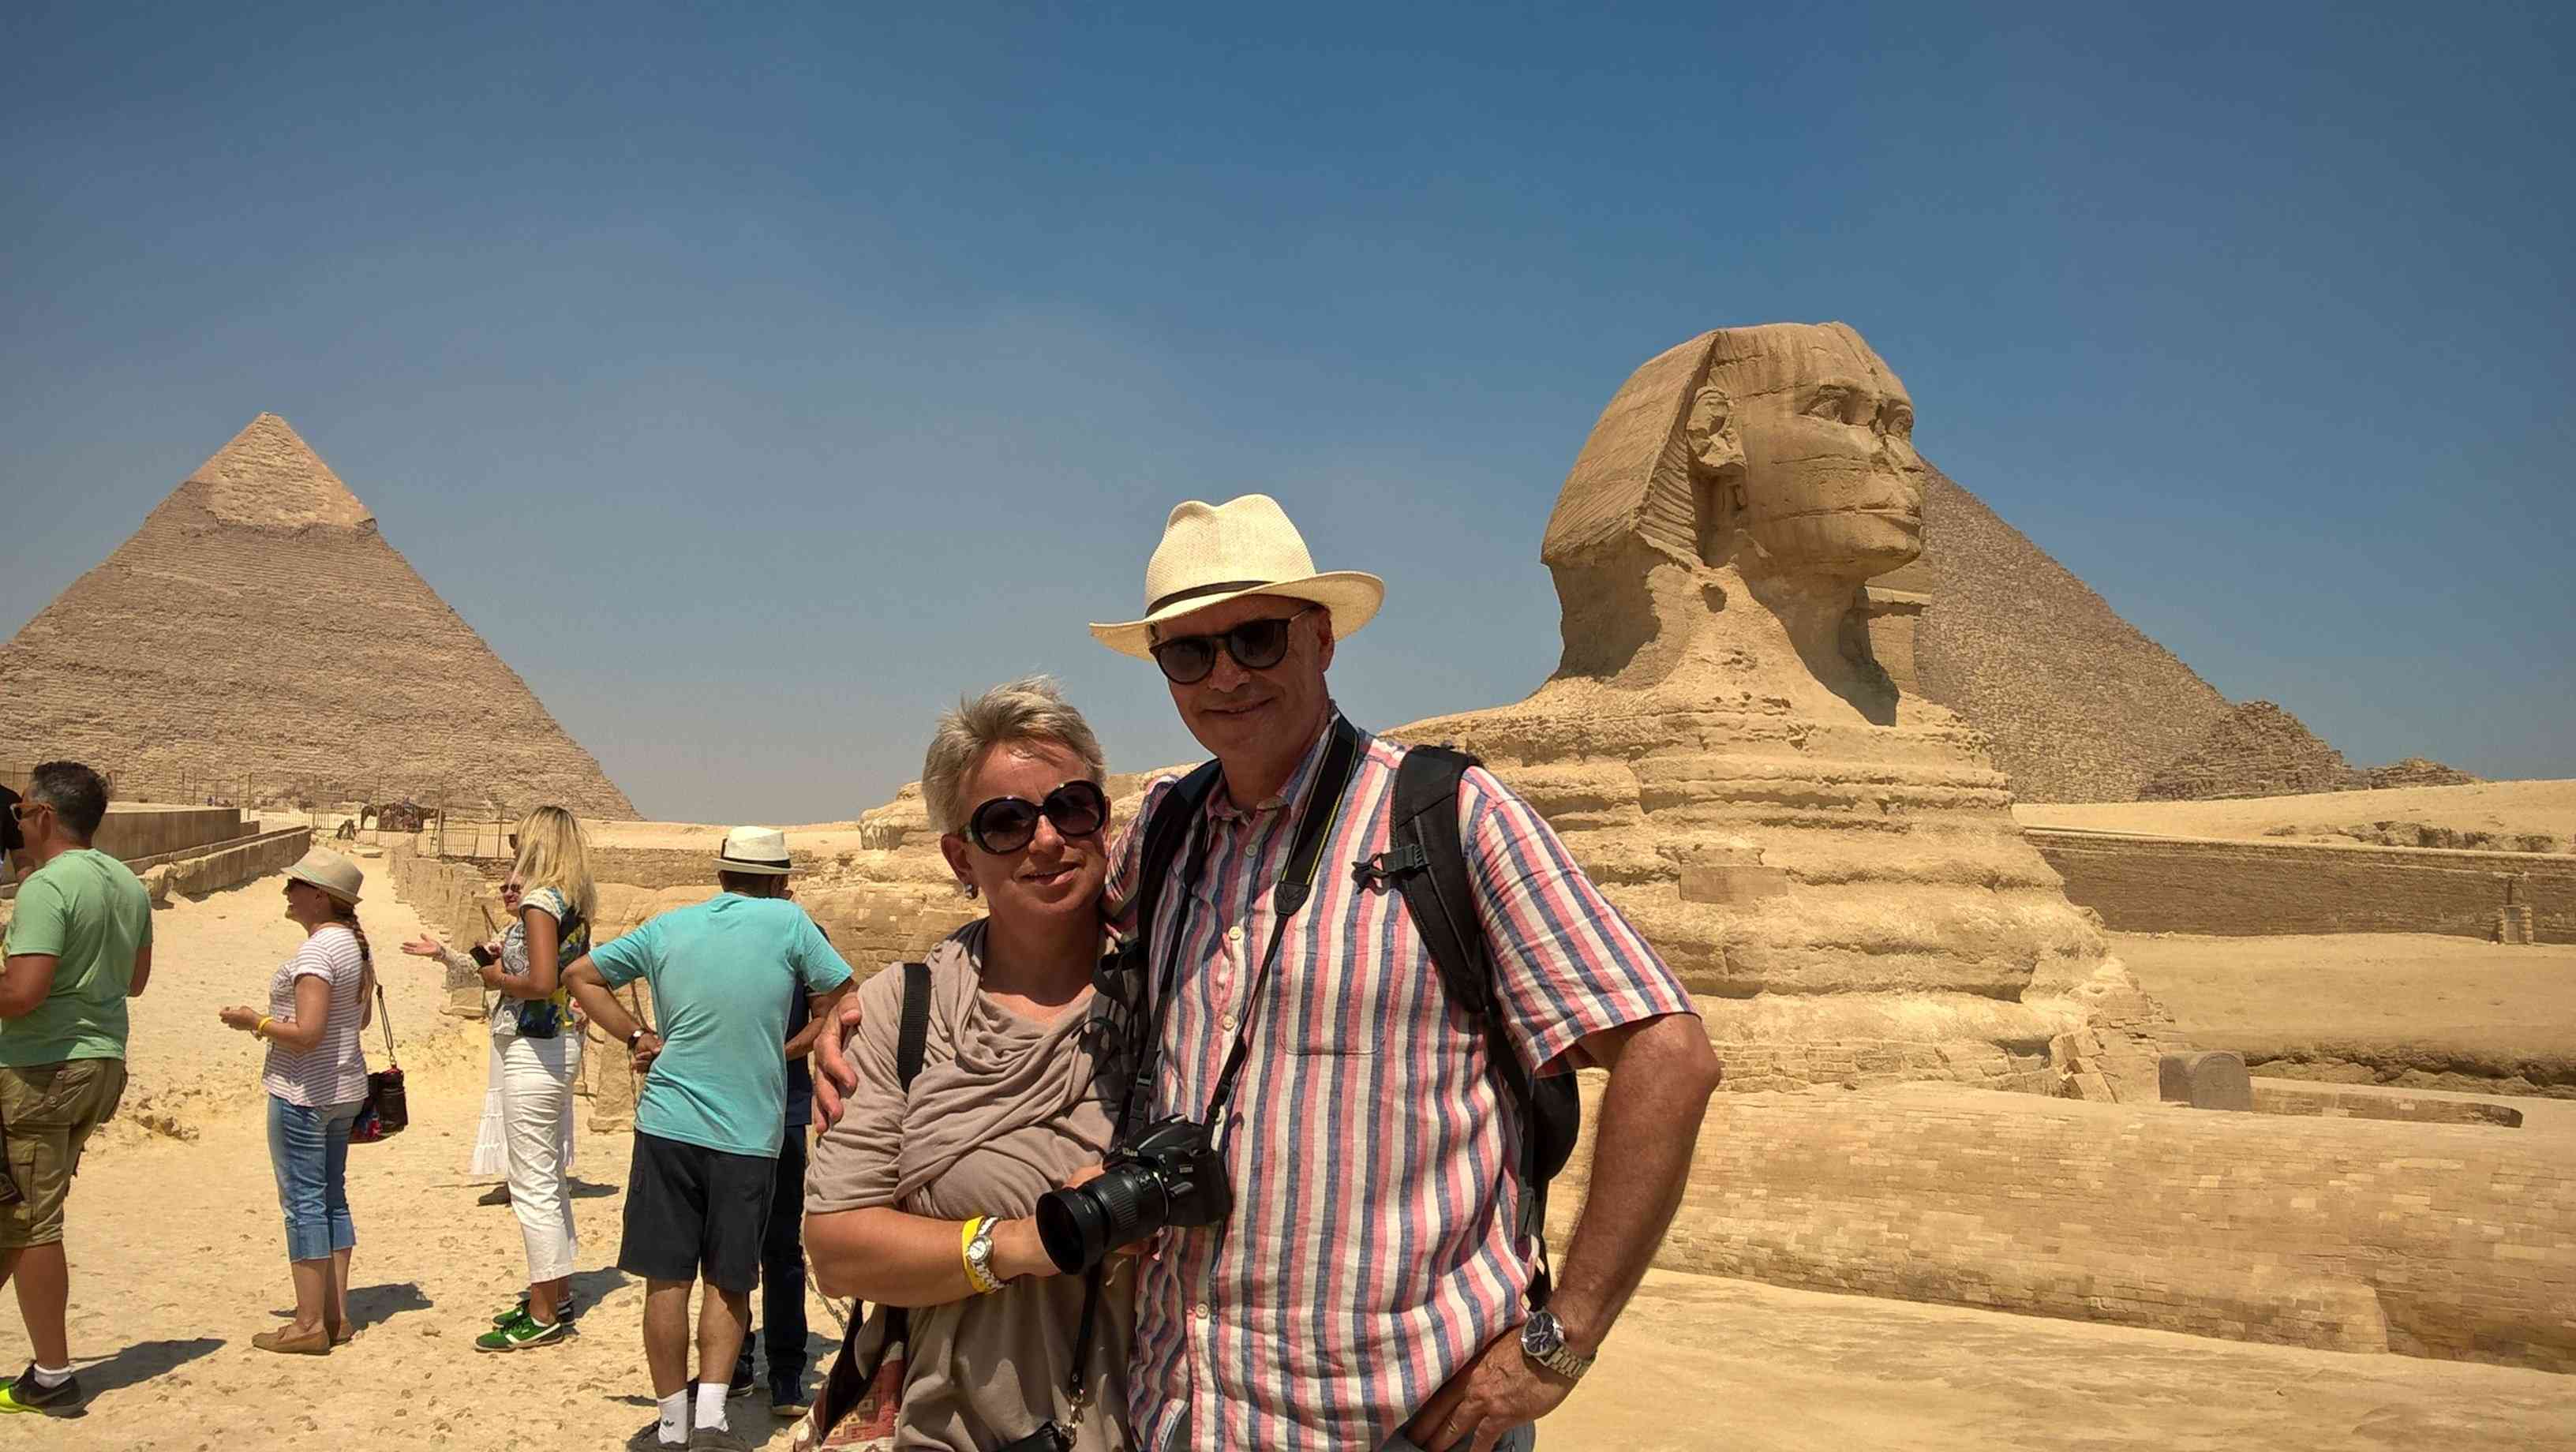 Excursion de 2 dias a El Cairo desde Sahel Hashesh en vuelo